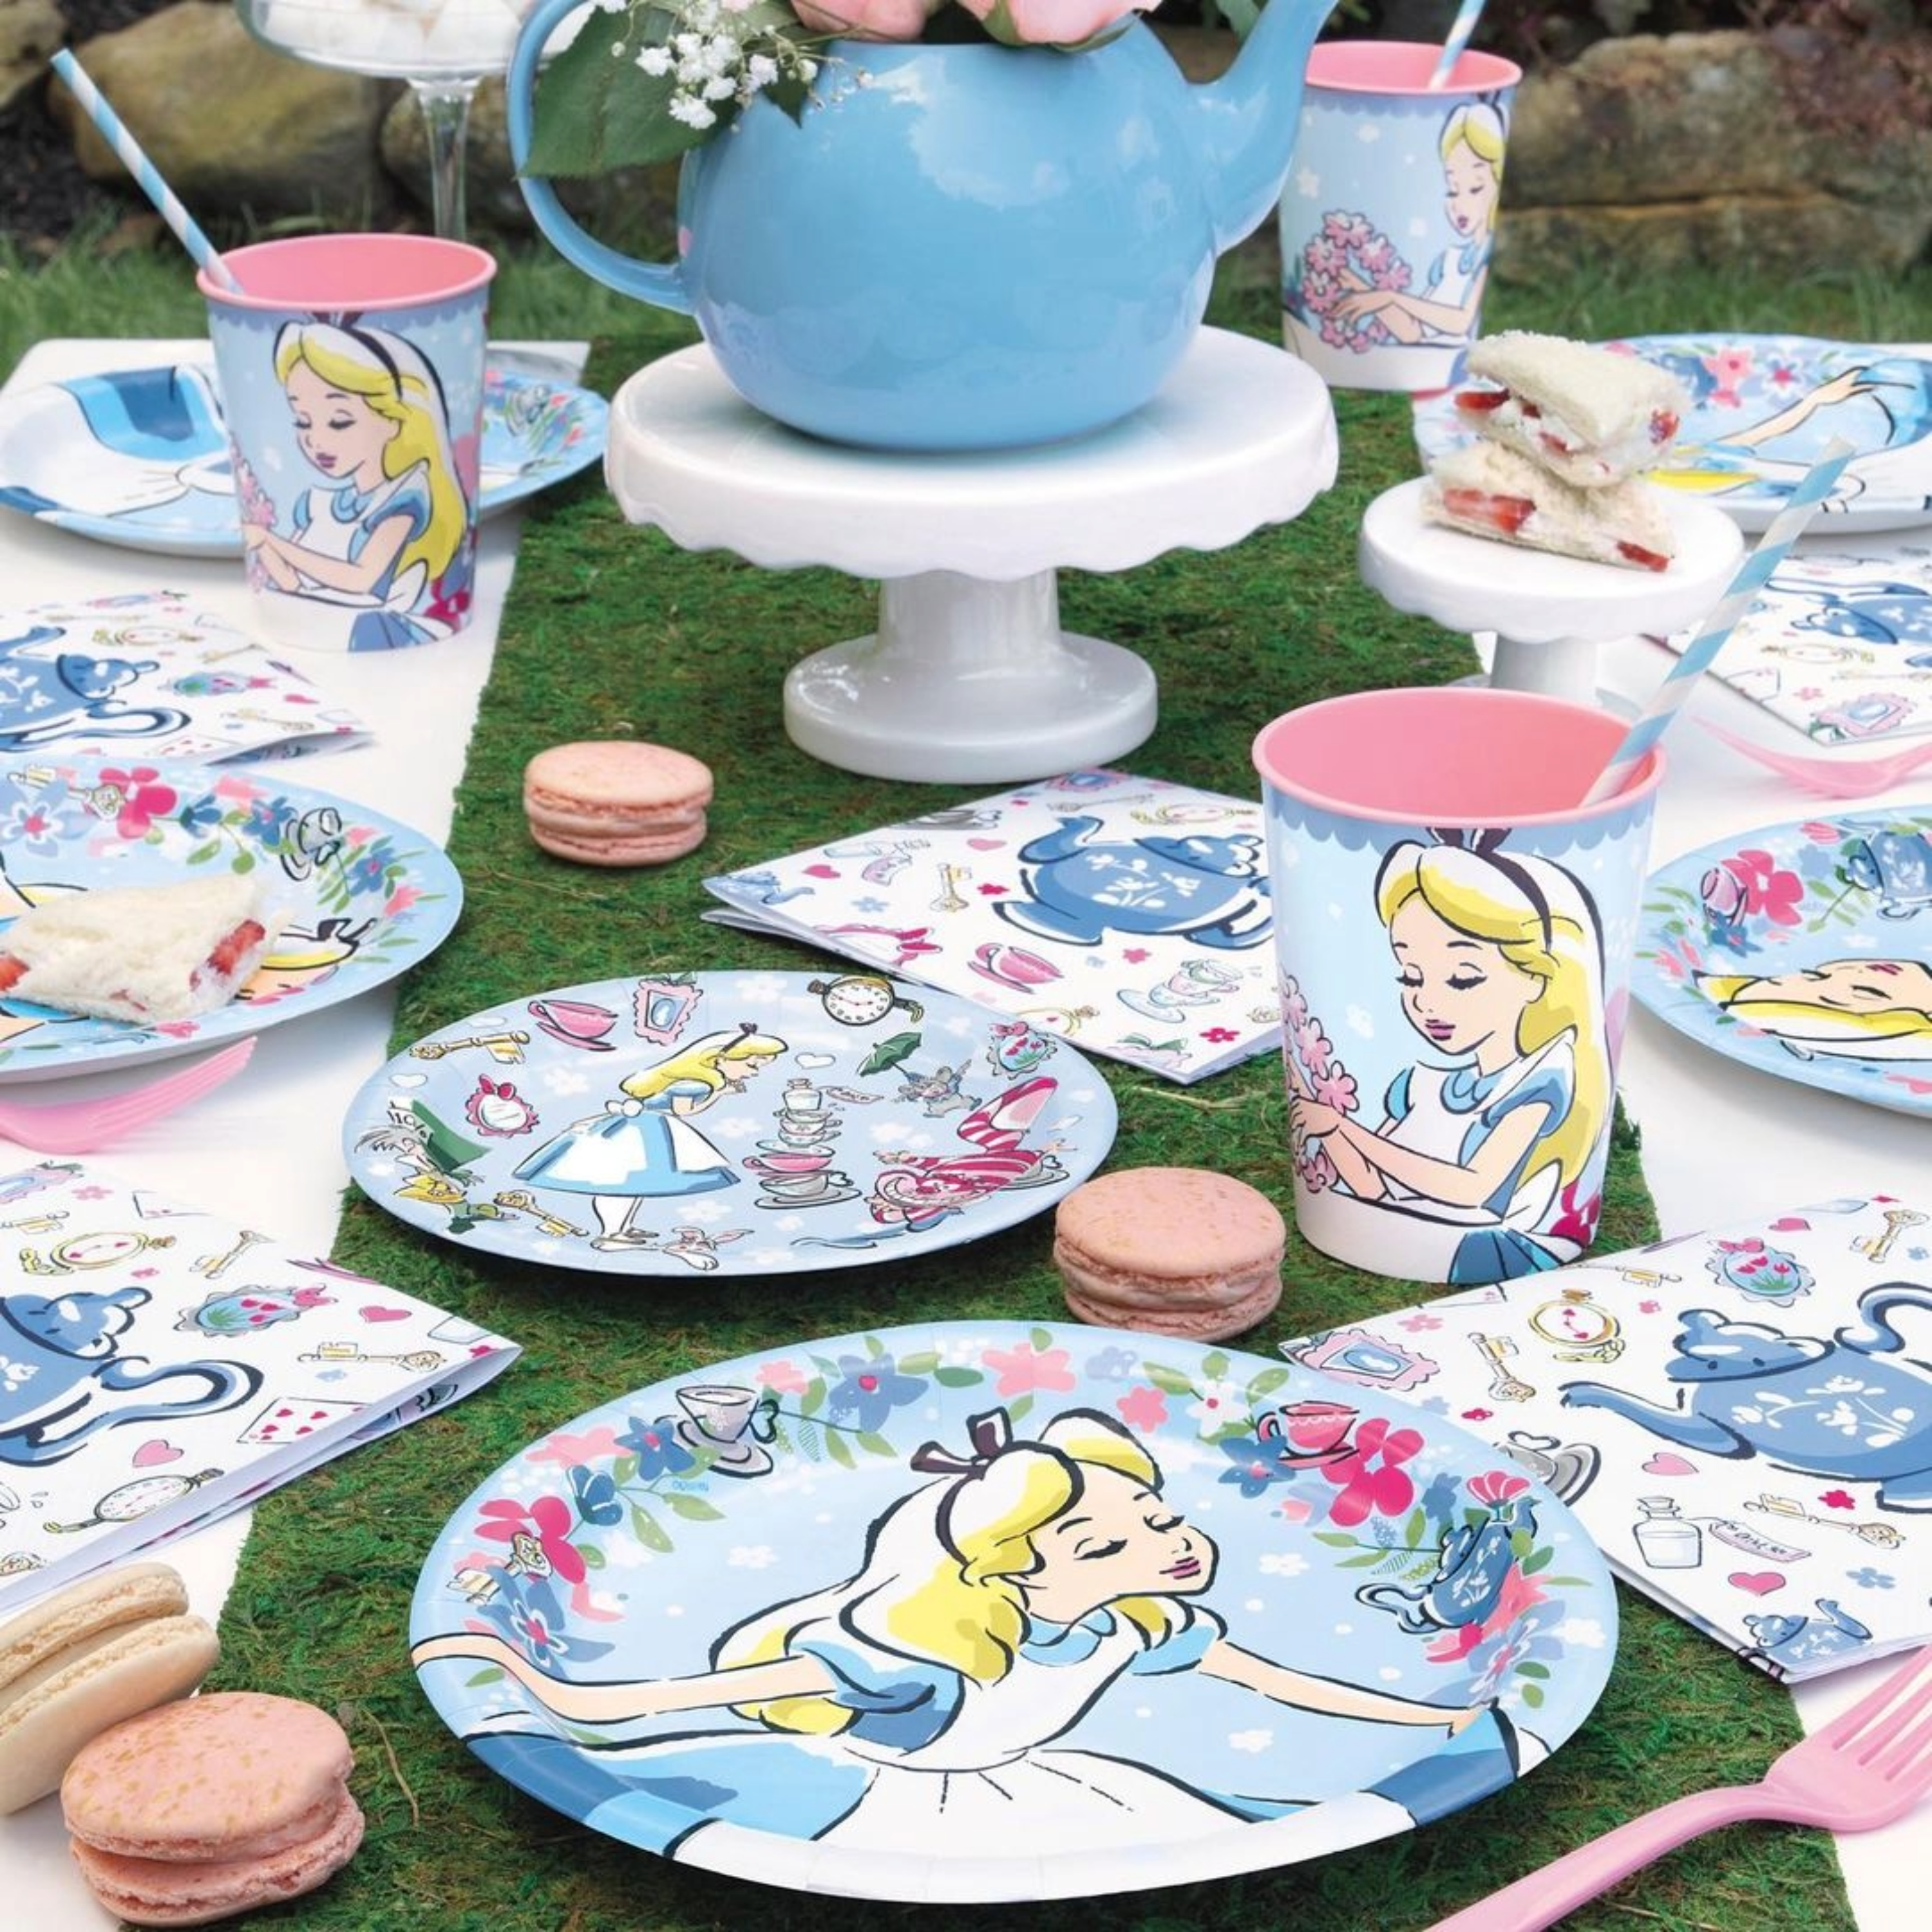 Alice in Wonderland Disney Birthday Party Favor Cup 16 oz - Amazing Pinatas 